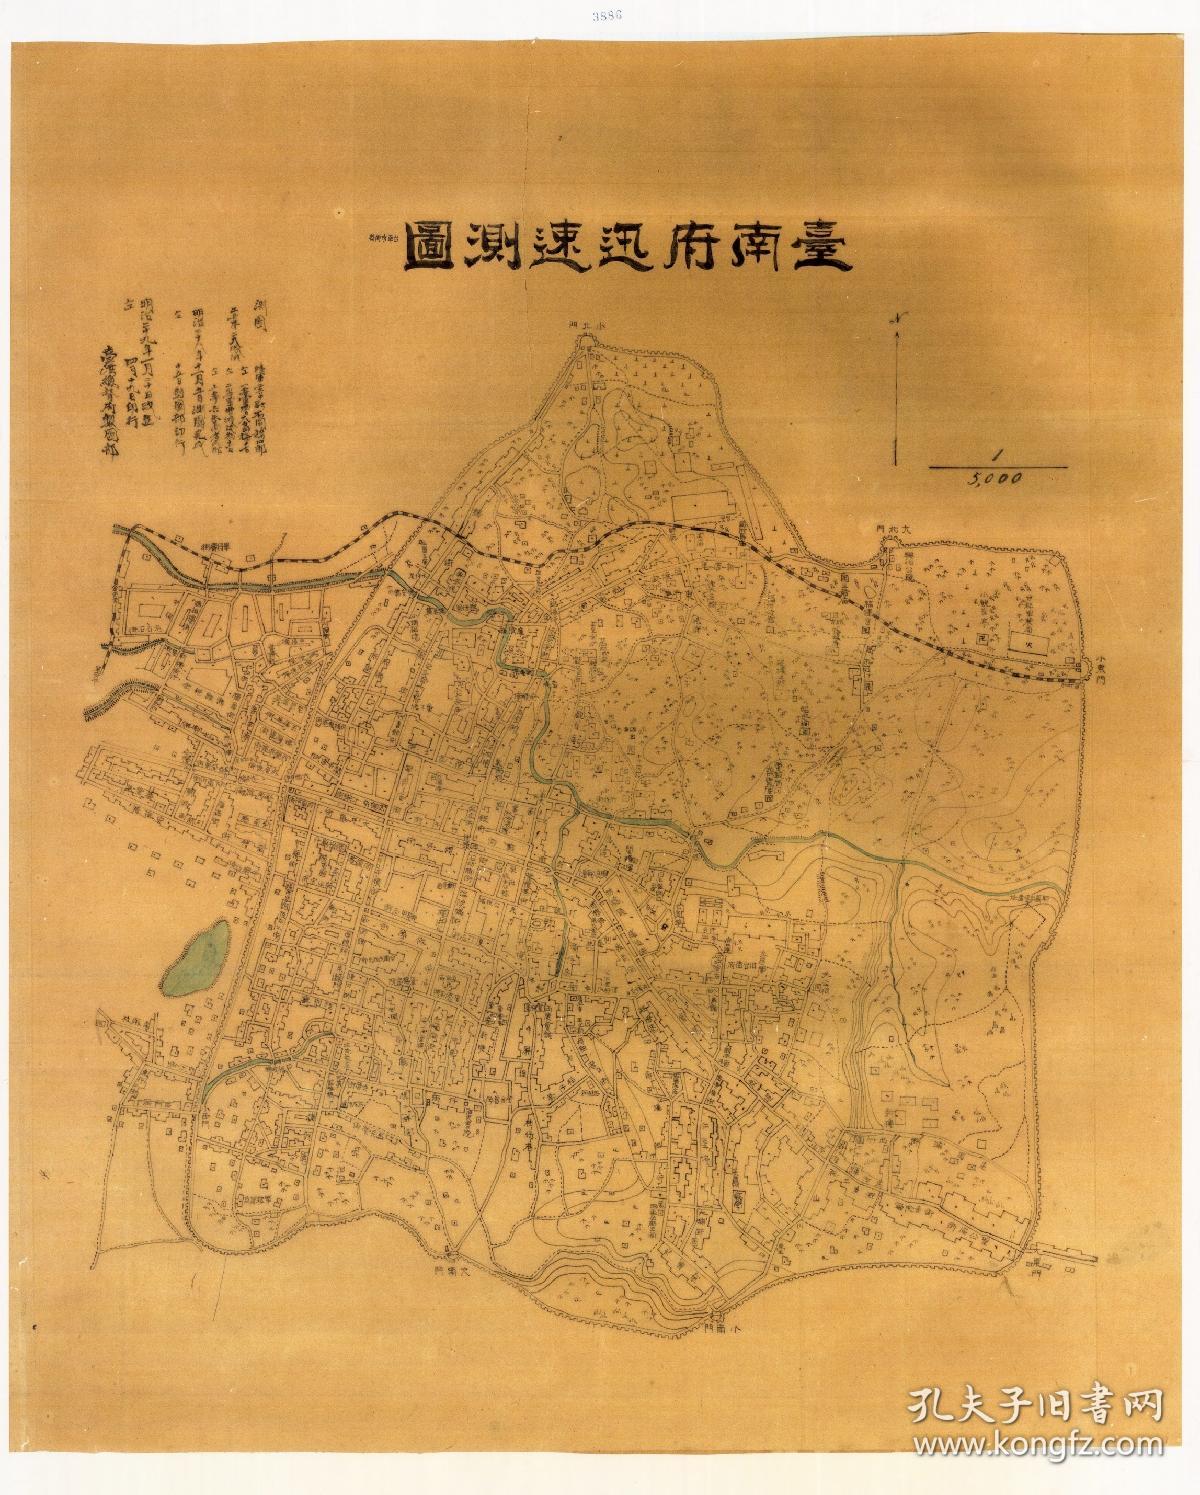 古地图1896年  台湾-台南府迅速测图。纸本大小80.96*100.9厘米，宣纸印刷品